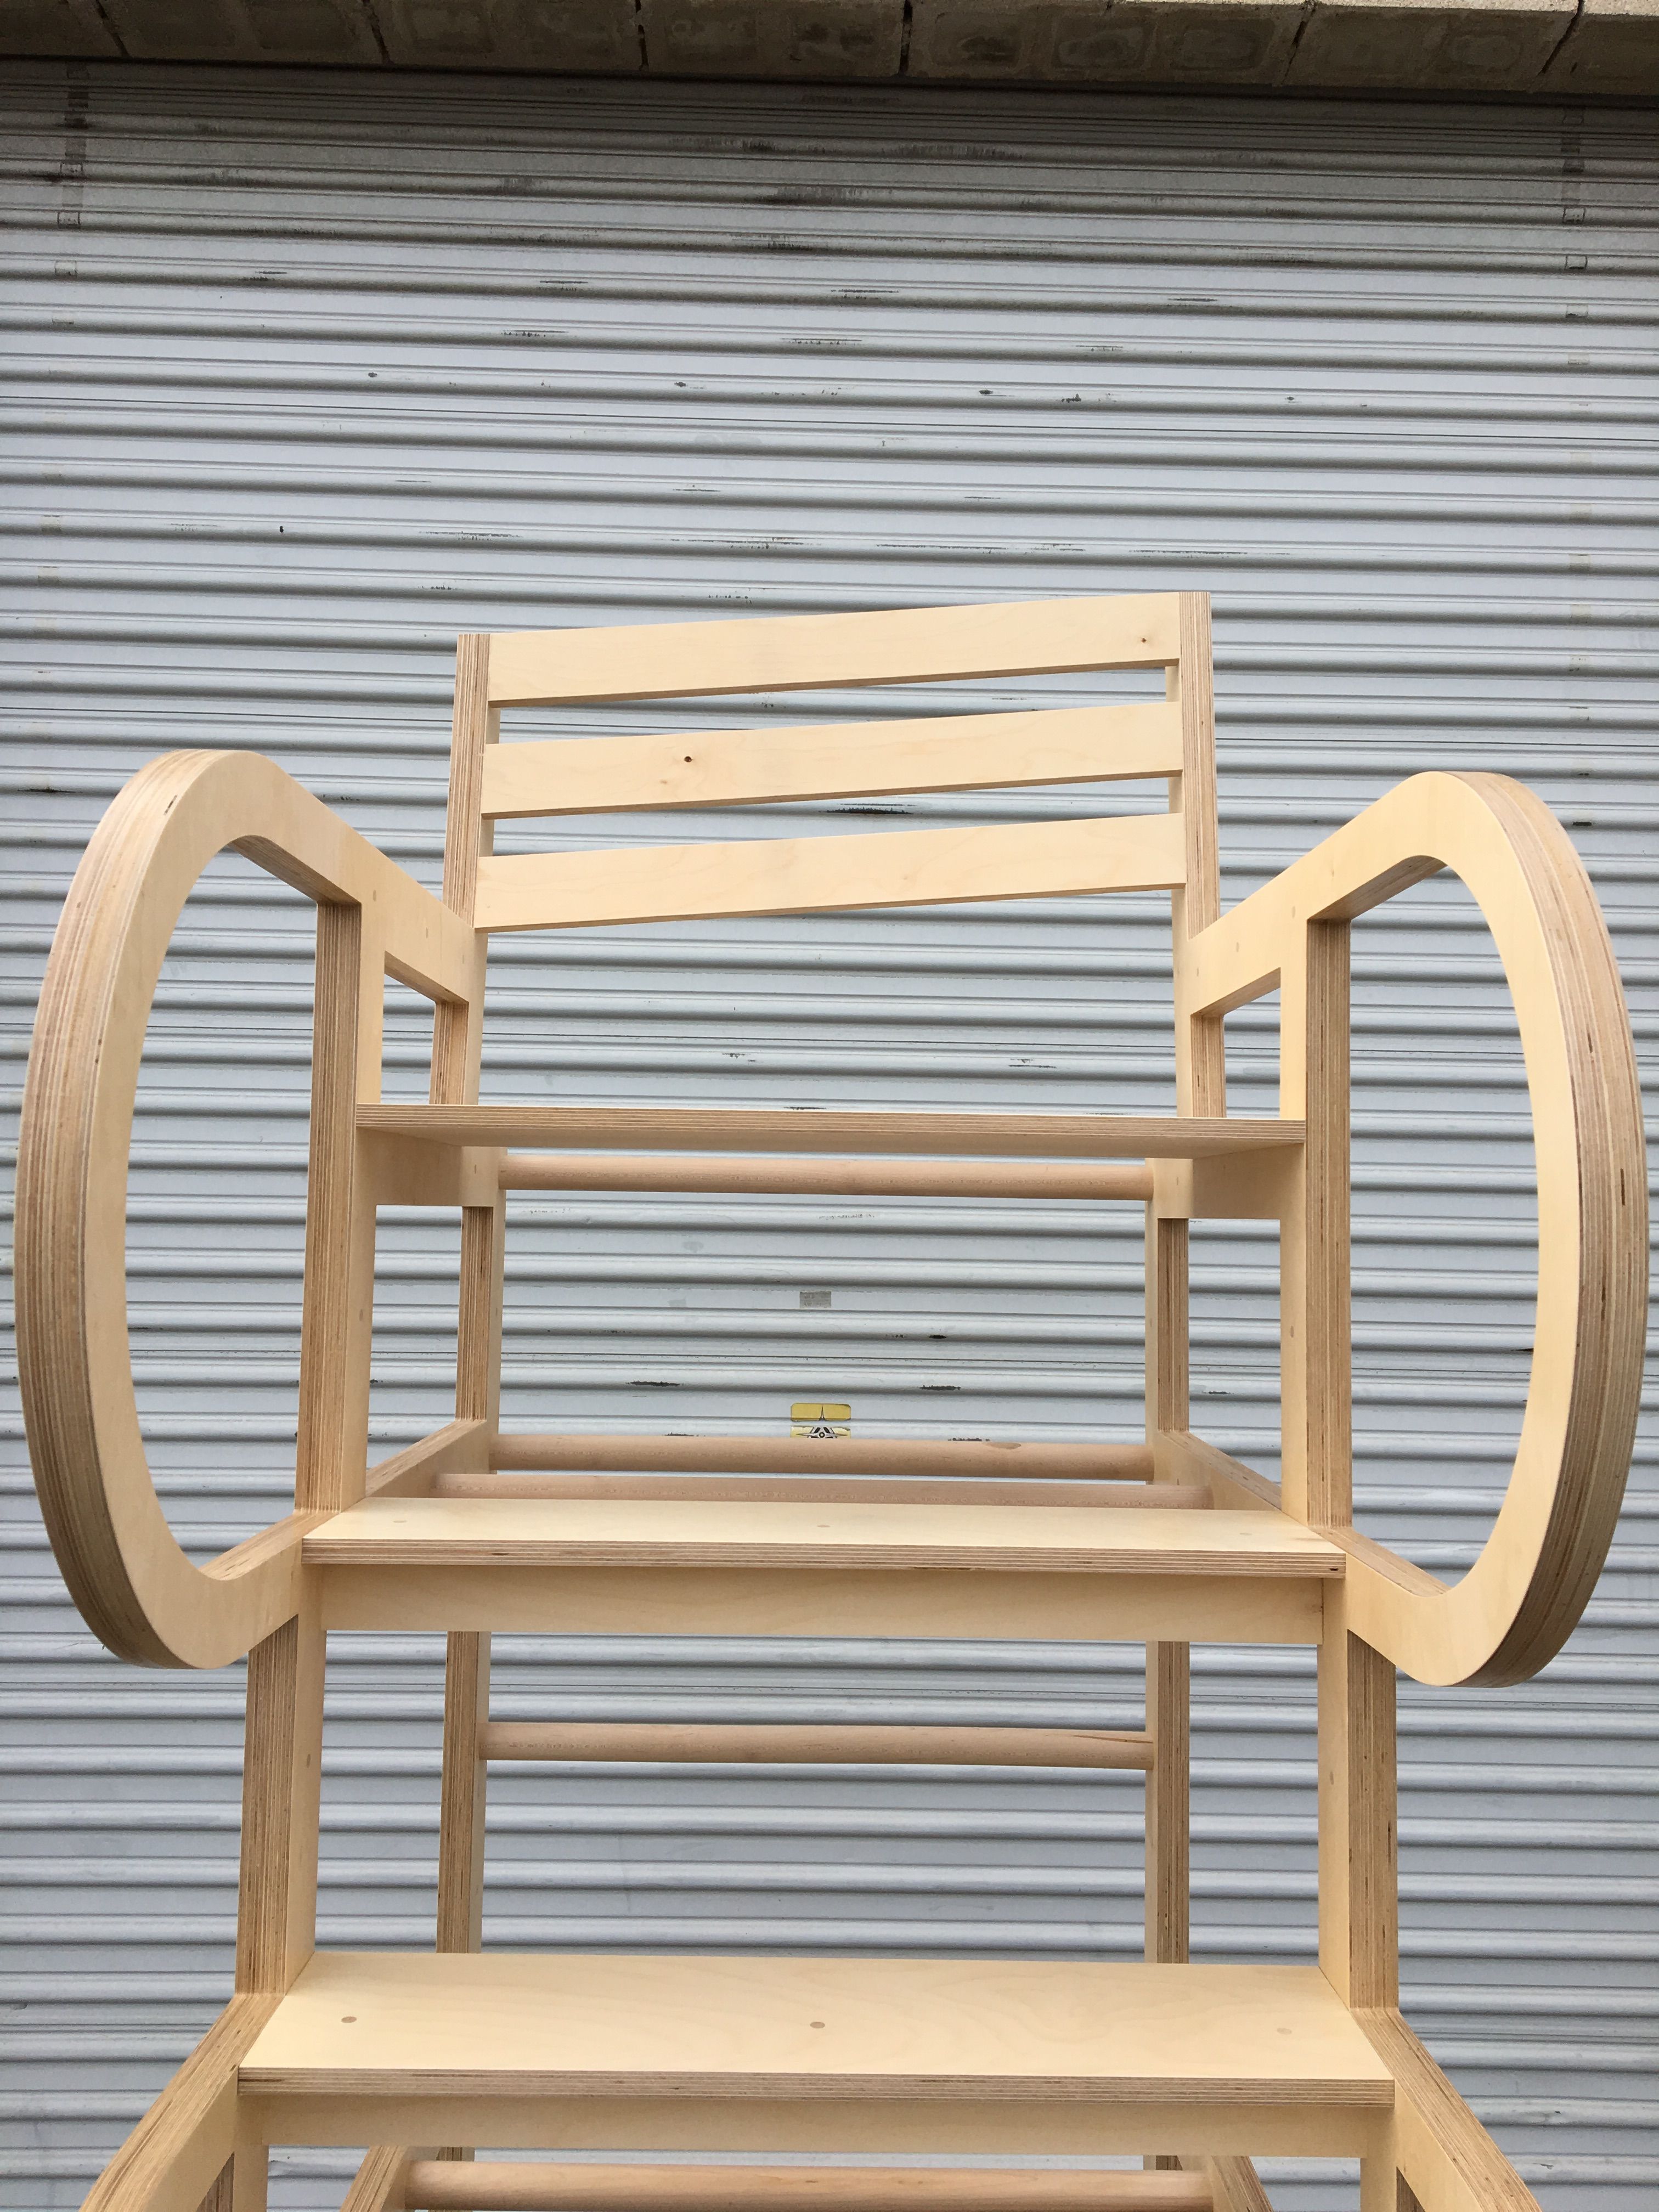  Climbable Chair - Owl Bureau x Adidas / Abbott Kinney Festival product image 4